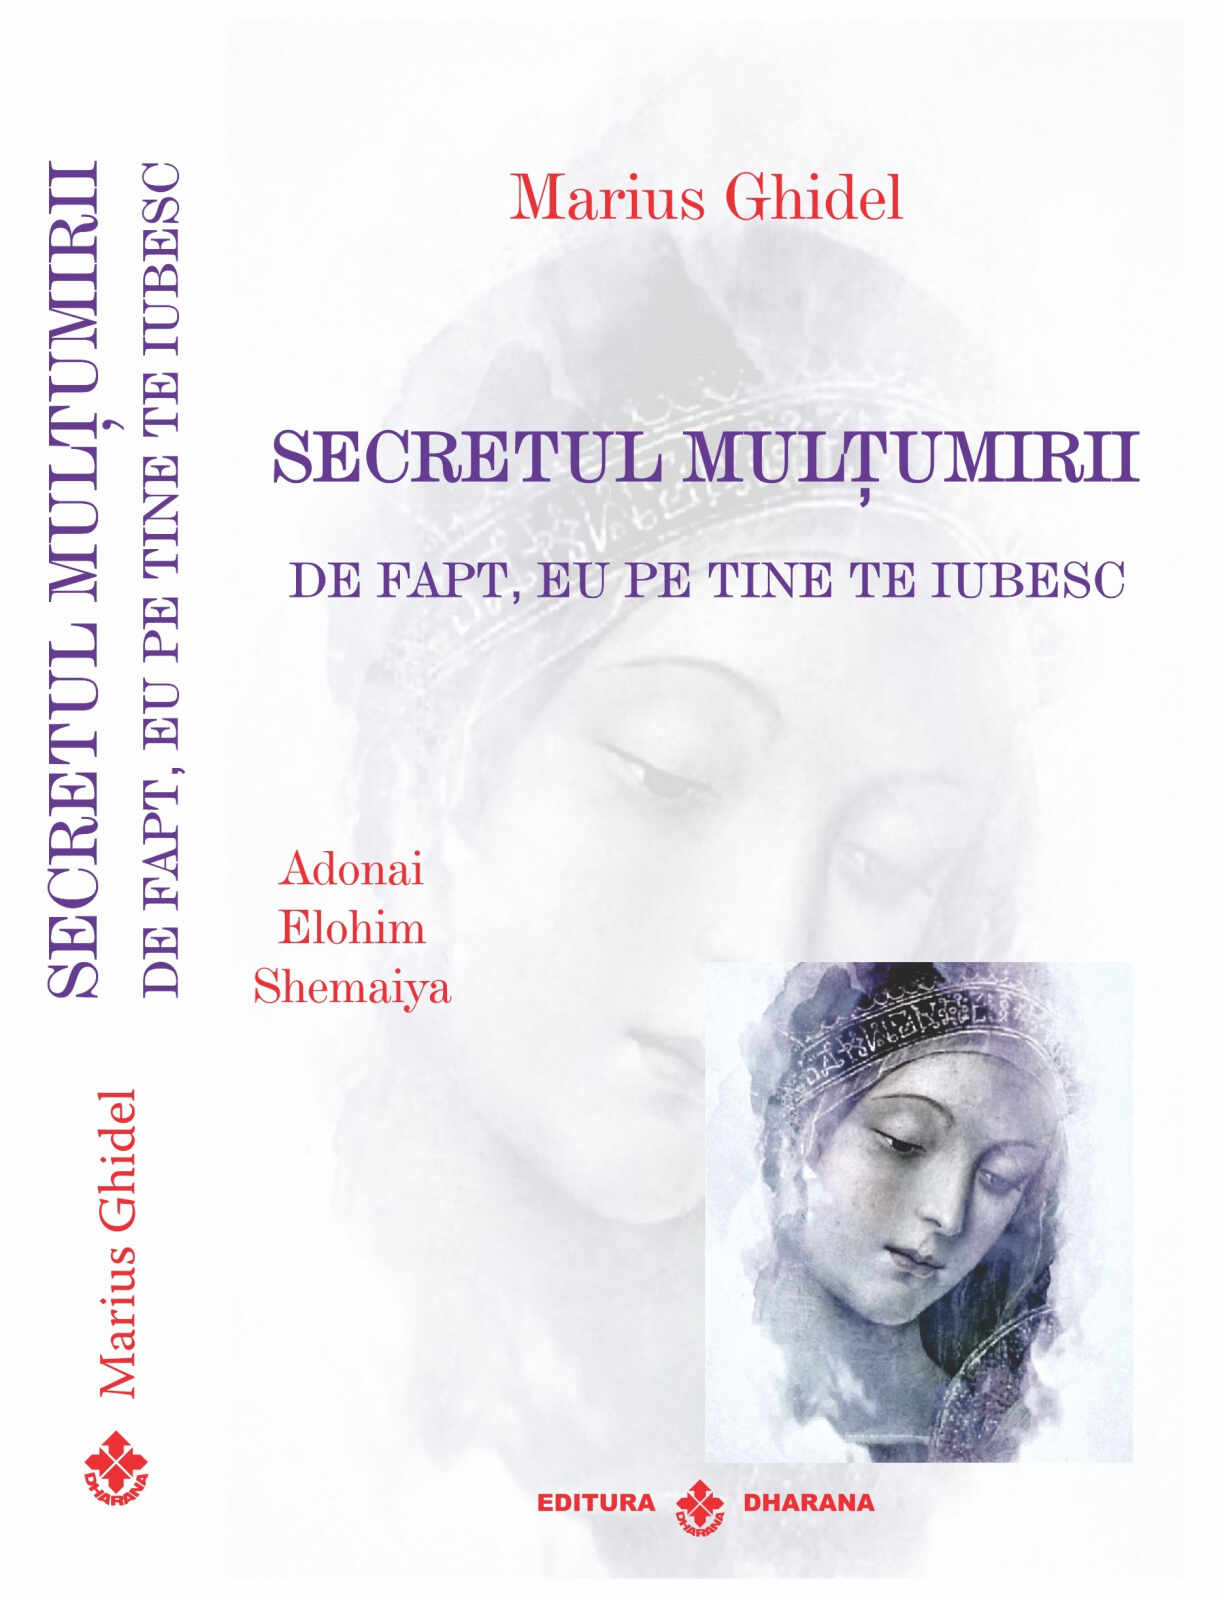 Secretul multumirii | Marius Ghidel